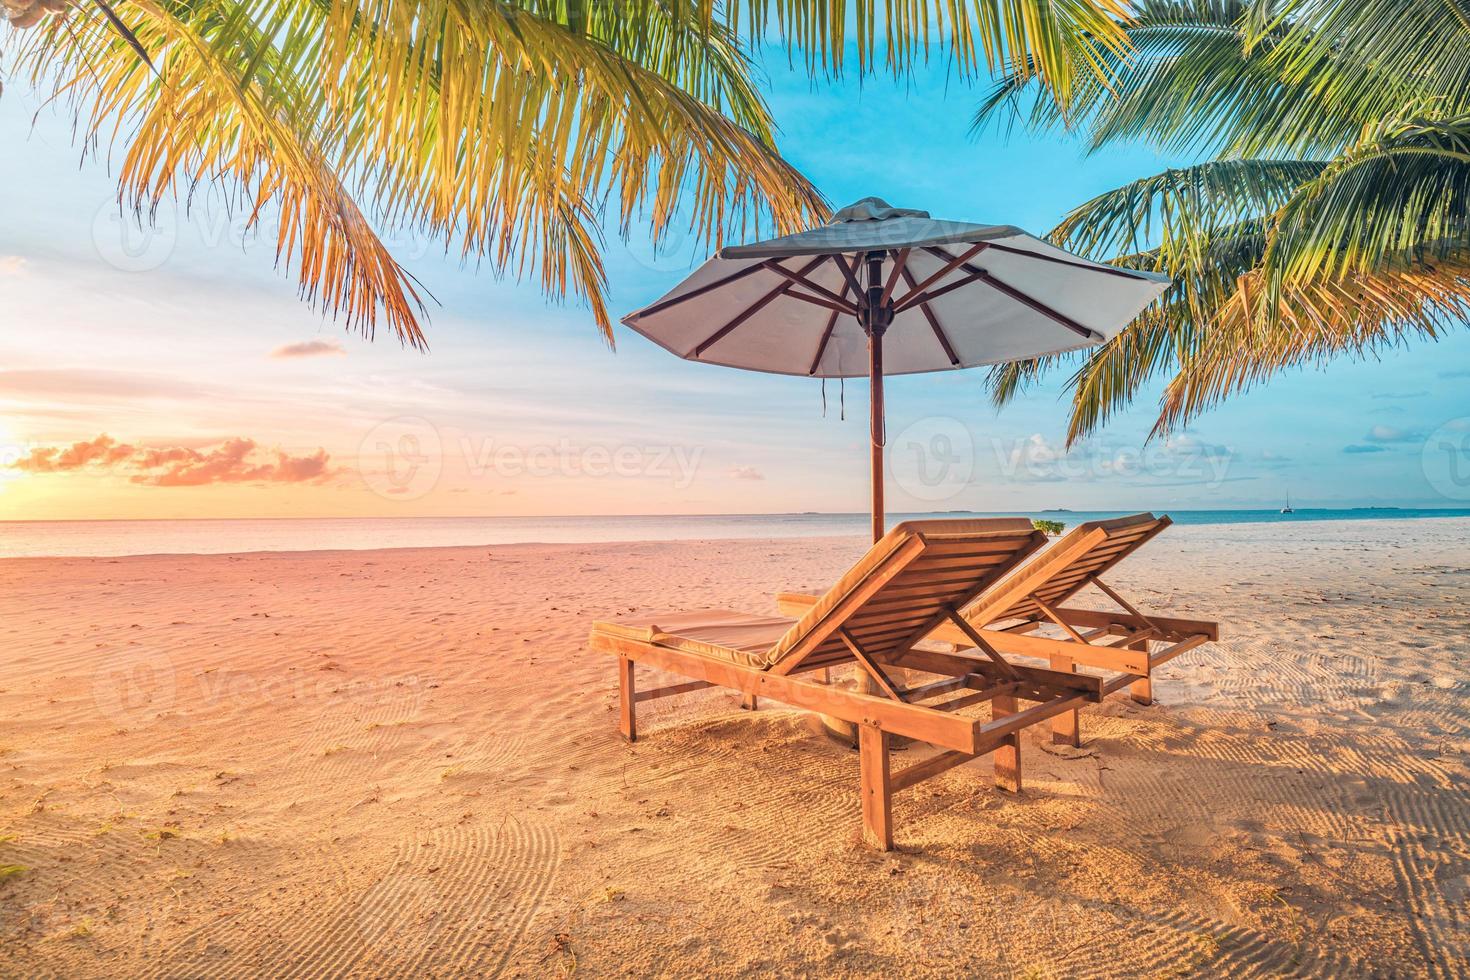 hermosa playa tropical de puesta de sol, tumbonas de pareja, sombrilla de tumbonas bajo palmera. arena blanca, vista al mar con horizonte, colorido cielo crepuscular, calma y relajación. hotel inspirador en la playa foto